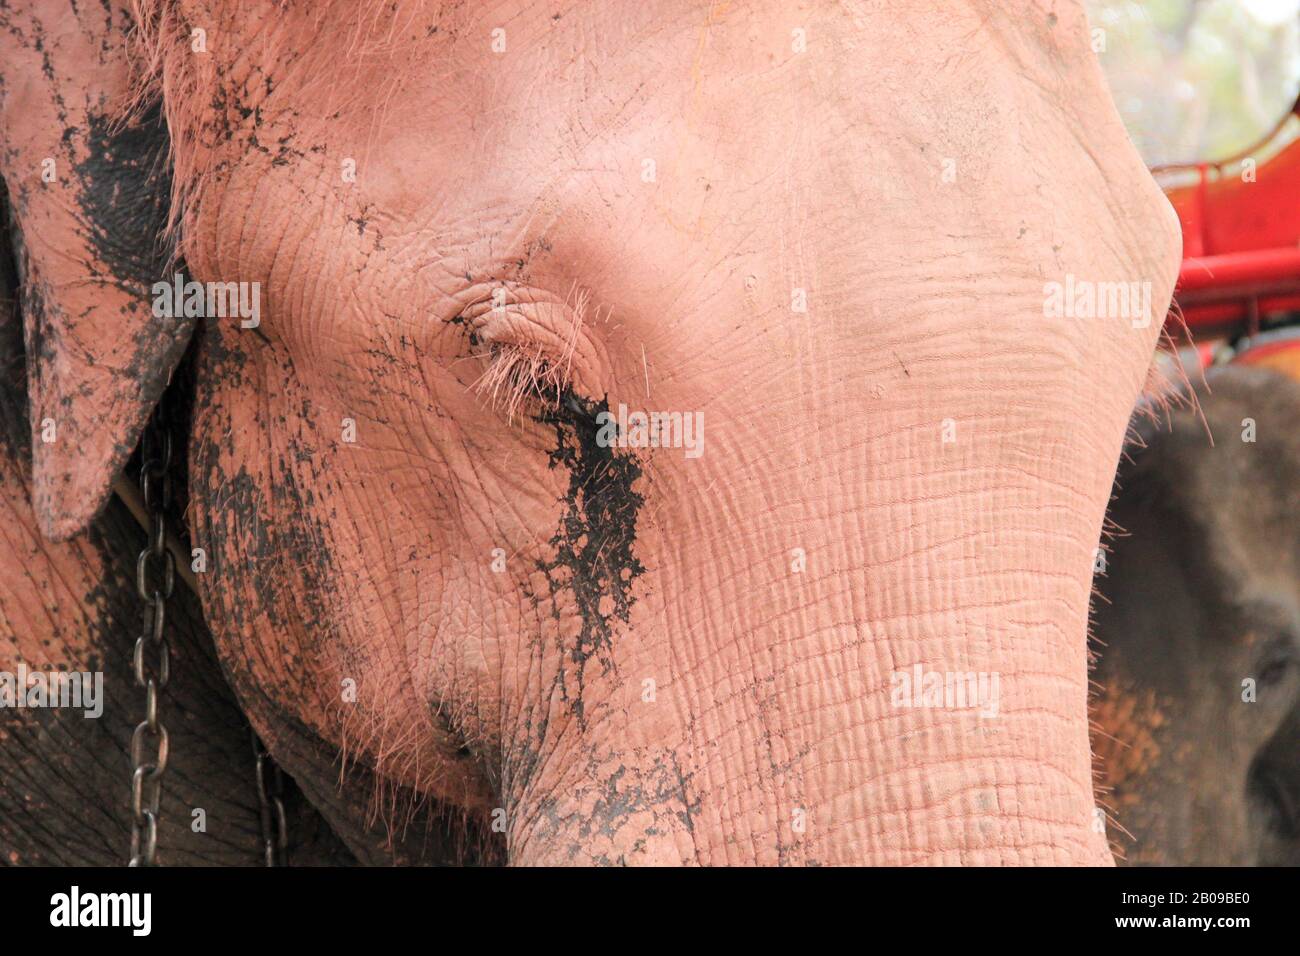 Sad asian elephant - close up. Looks like a rosa elephant Stock Photo